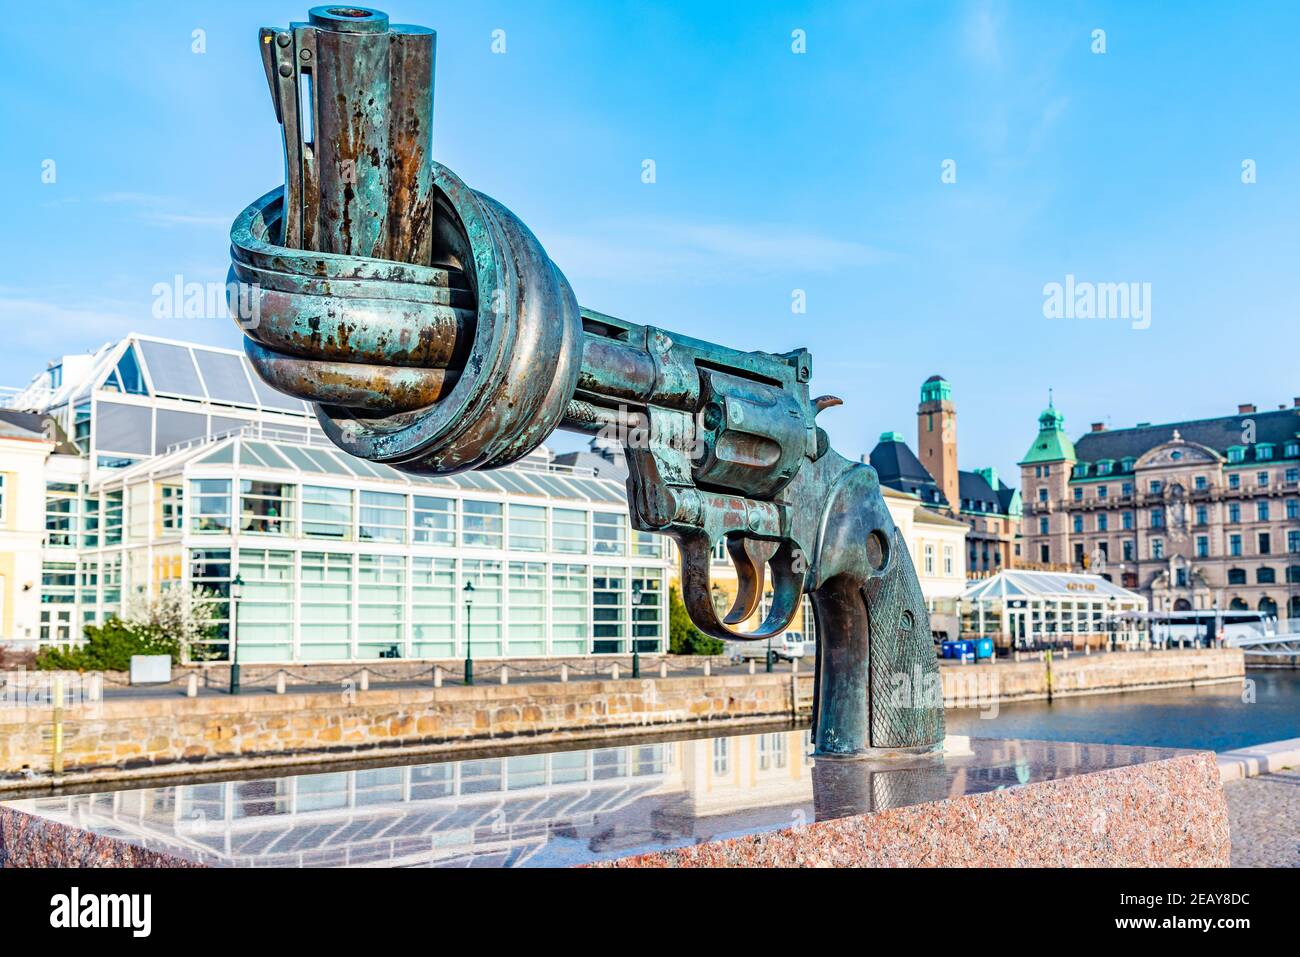 MALMO, SCHWEDEN, 24. APRIL 2019: Skulptur einer geknoteten Waffe von Carl Fredrik Reutersward in Malmo, Schweden Stockfoto